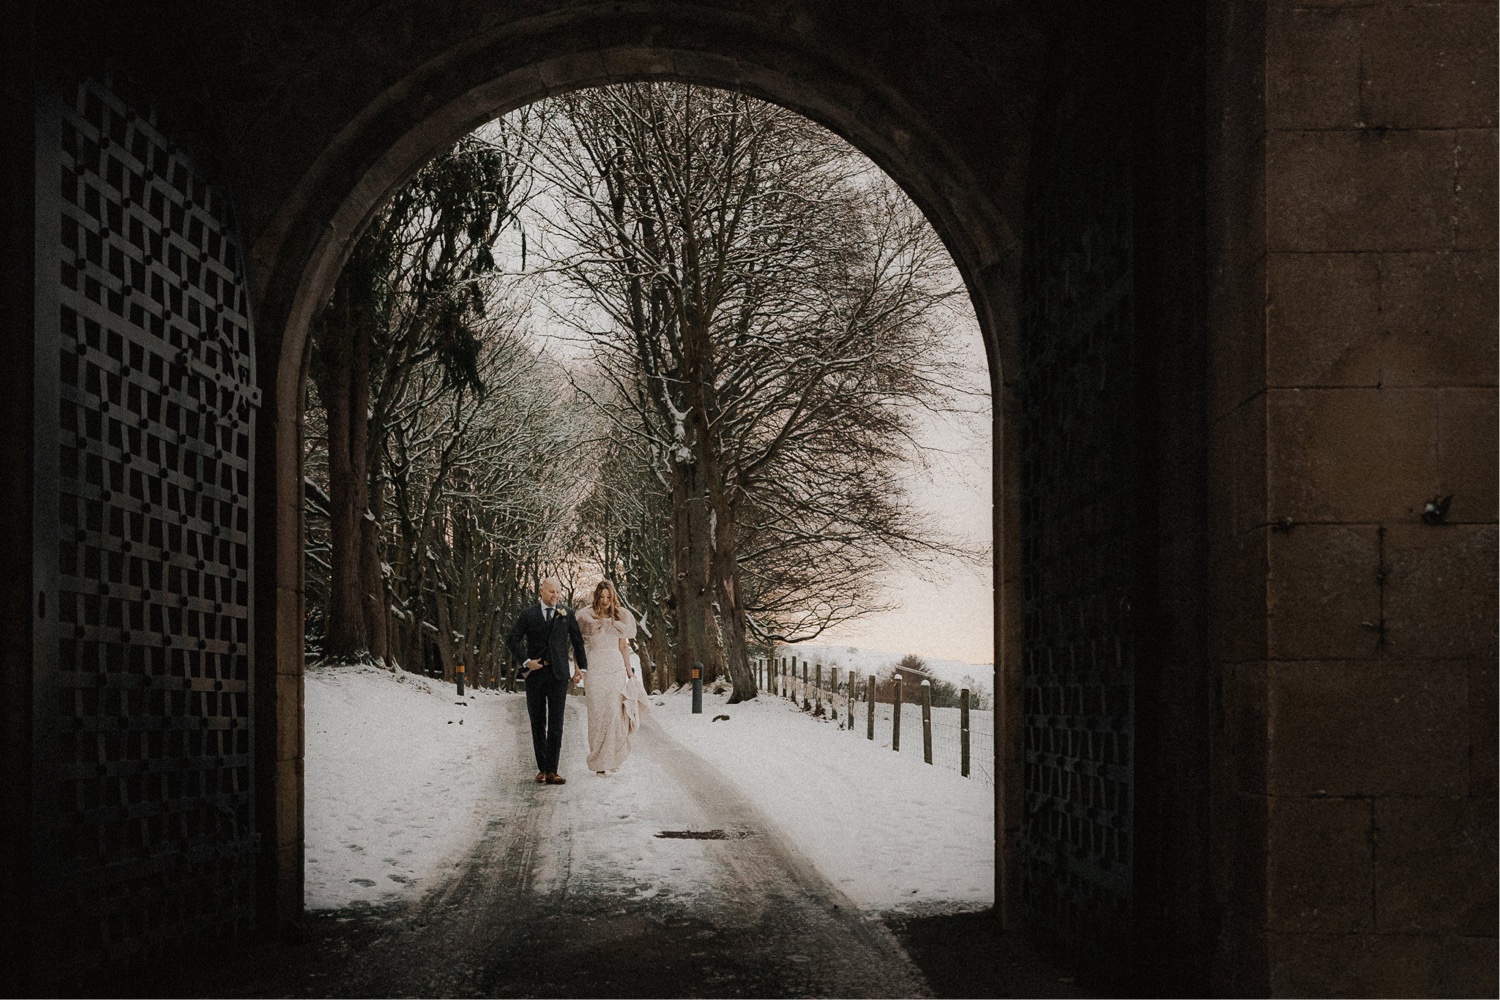 A wedding couple strolling through a snowy archway.